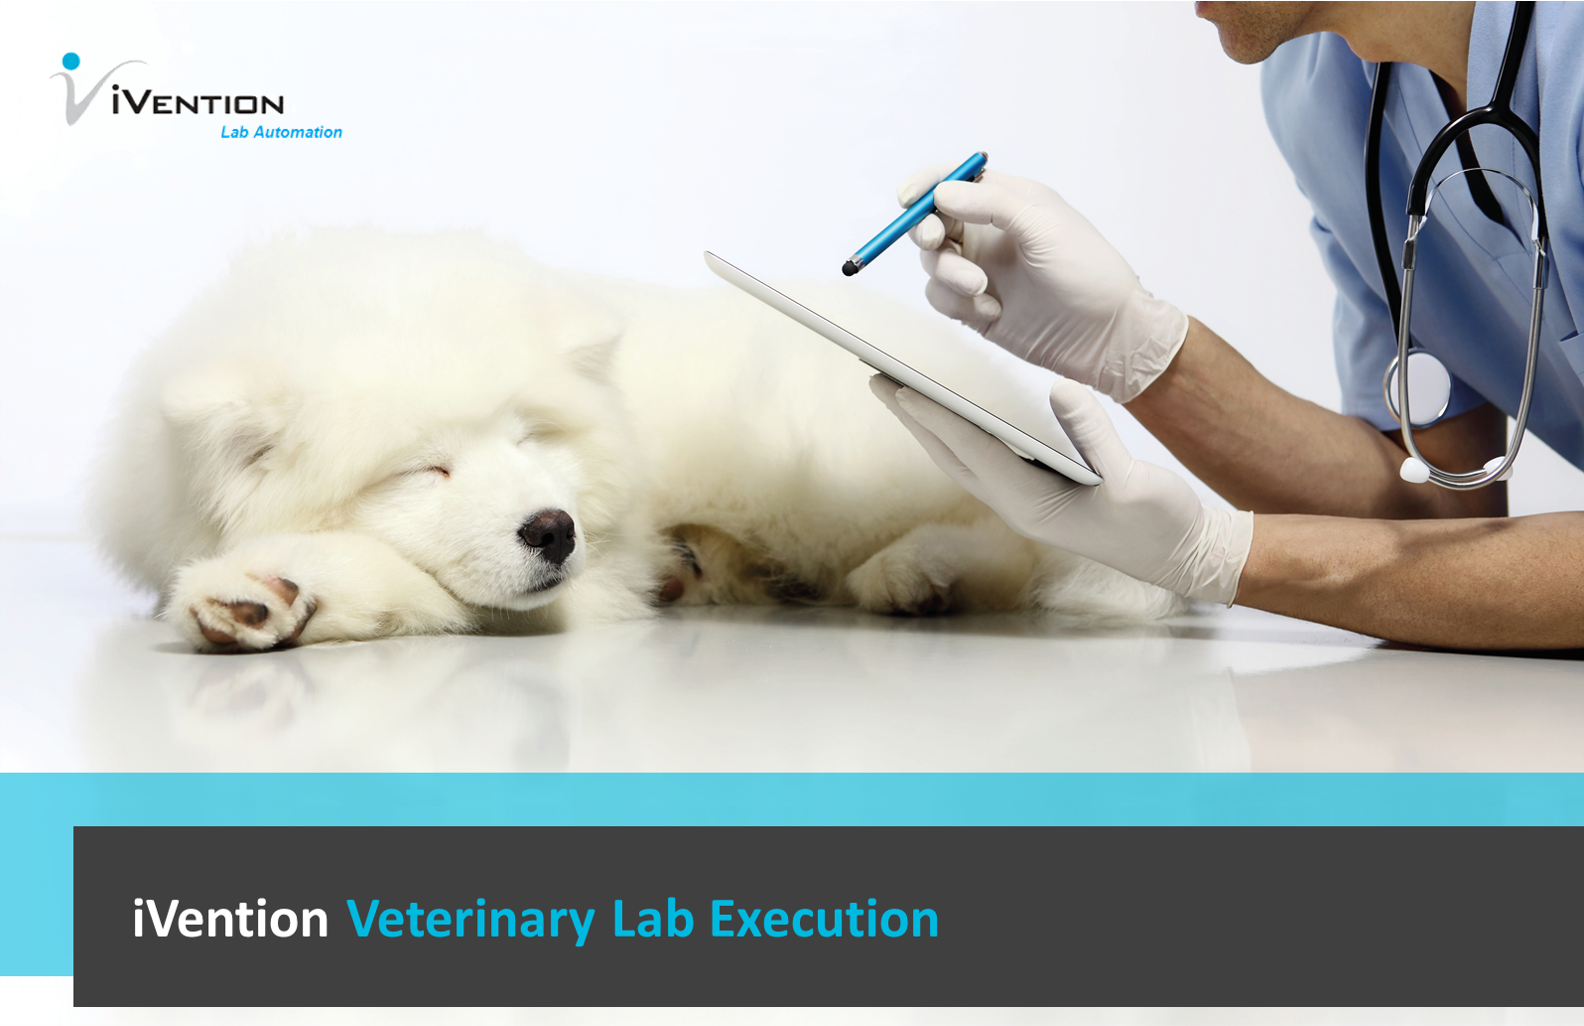 iLES Veterinary Lab Execution - Landingpage - Image